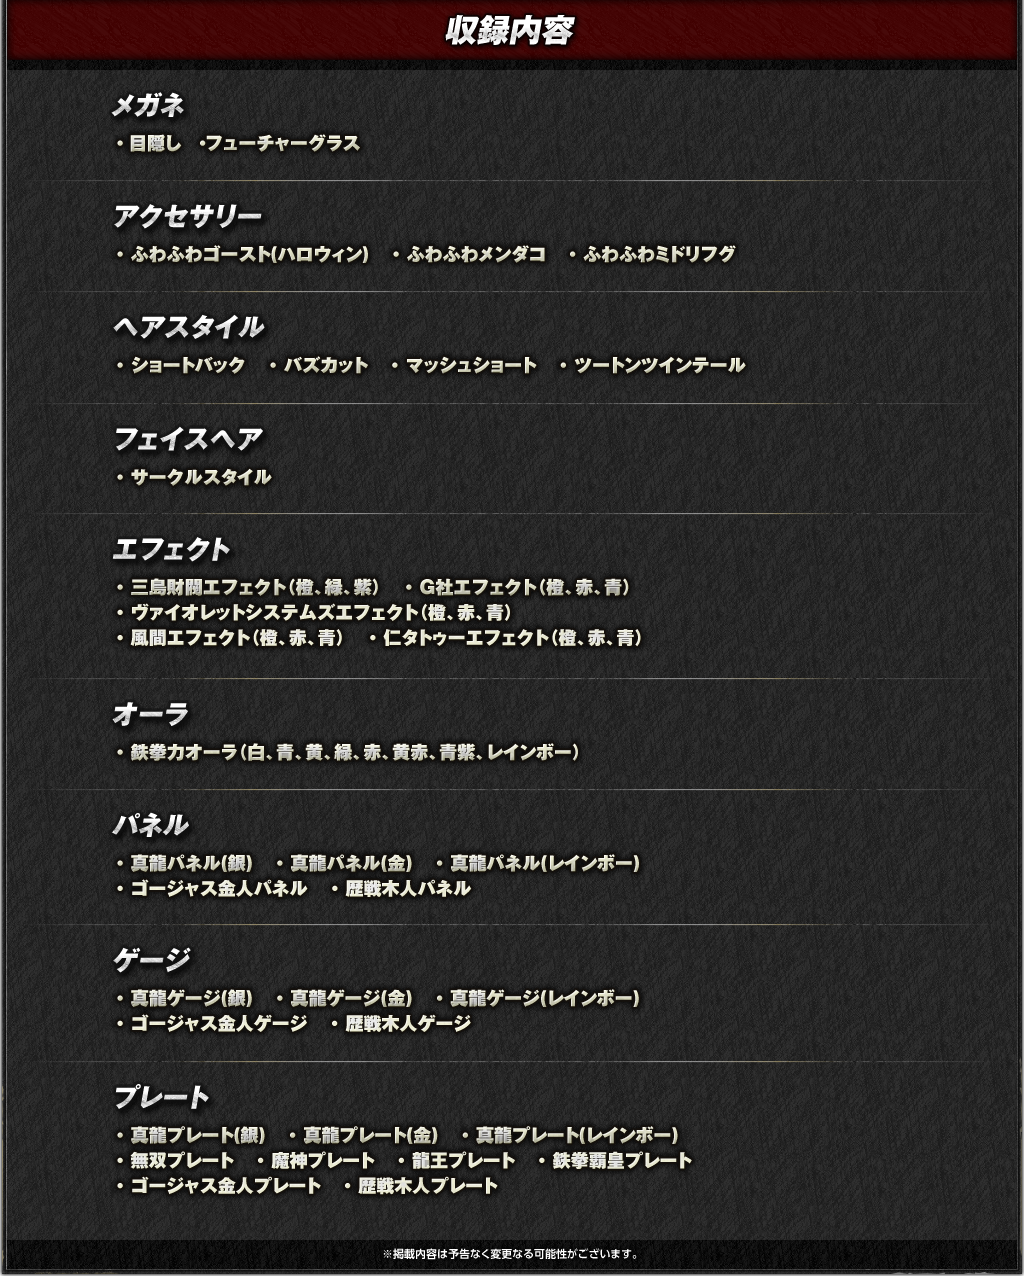 鉄拳7 バンダイナムコエンターテインメント公式サイト